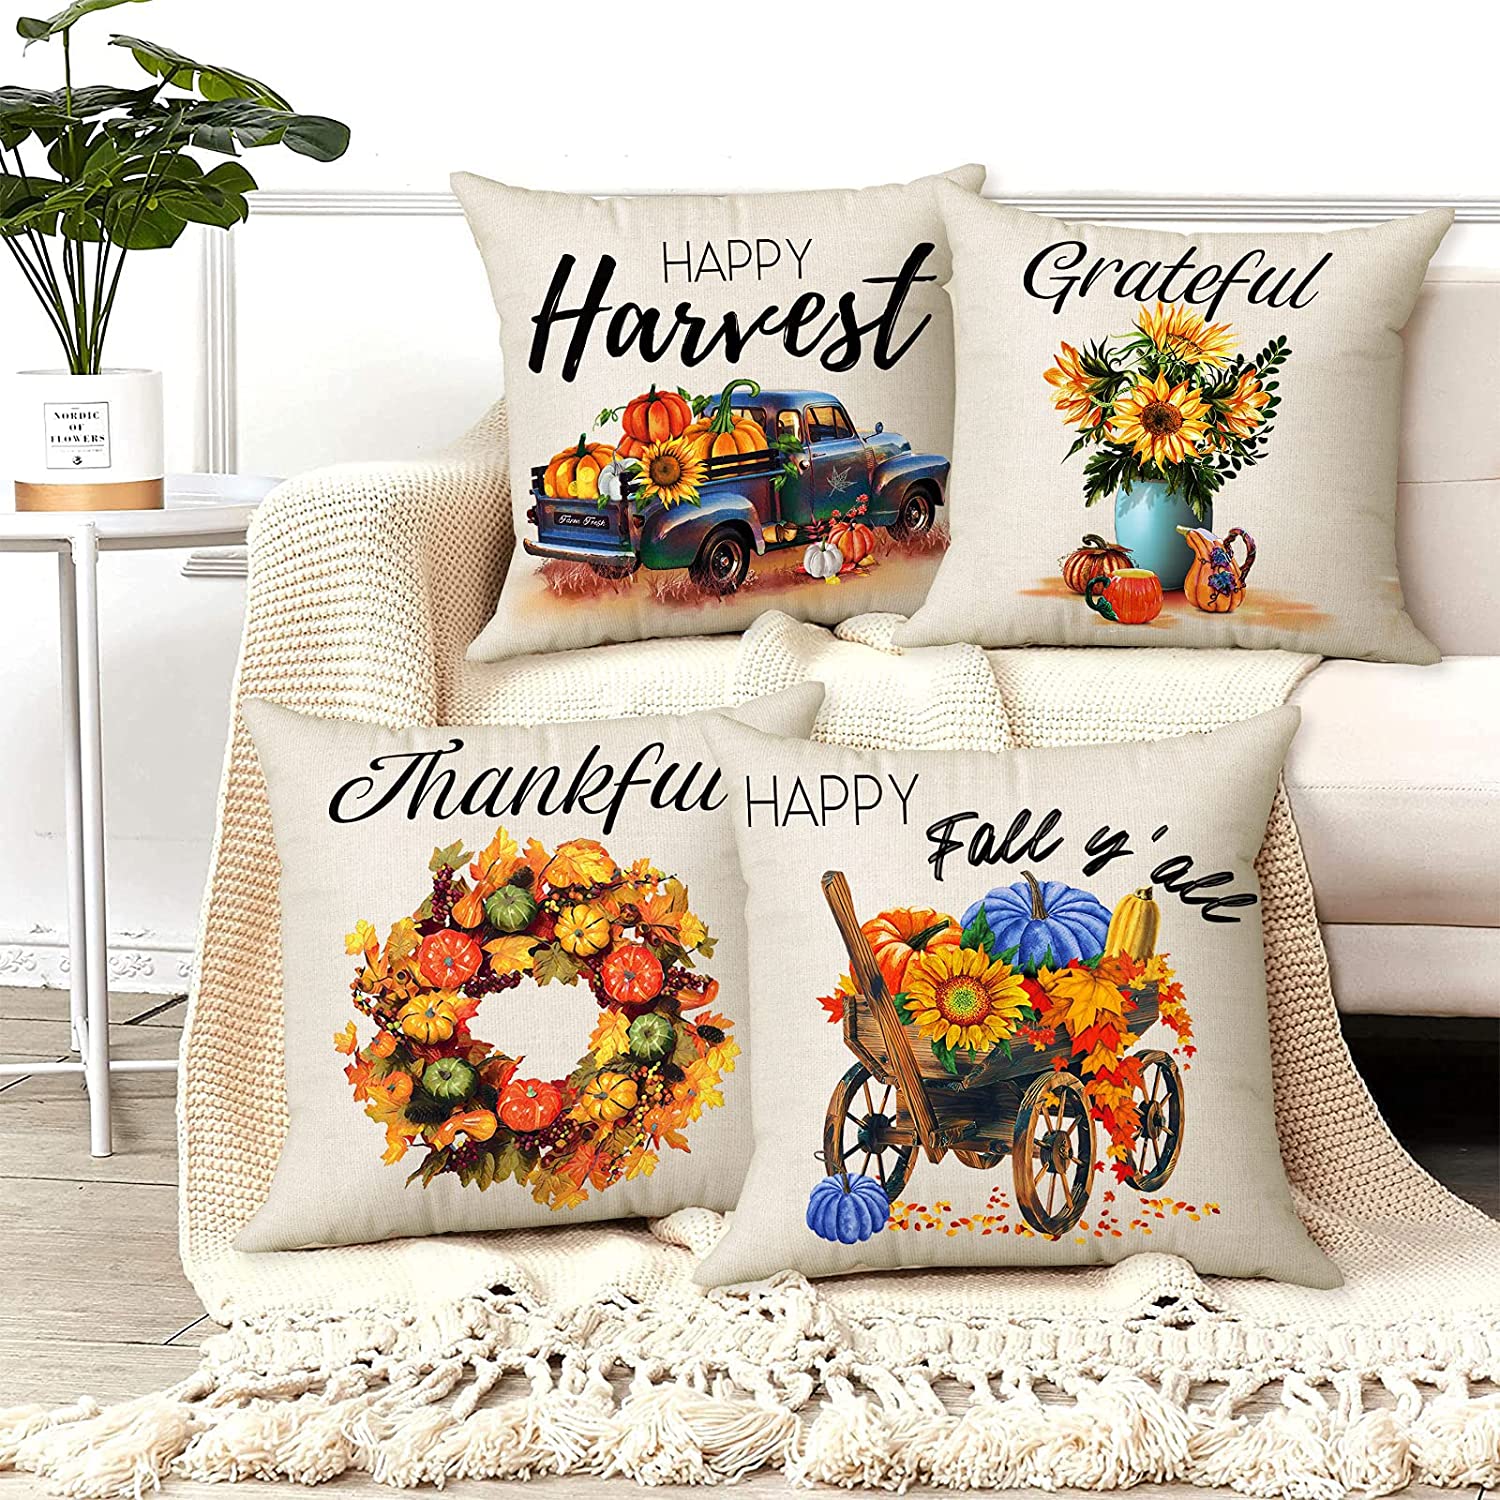 Set of 4 Pillow Covers 18x18, Desert Cactus Plant Design Cotton